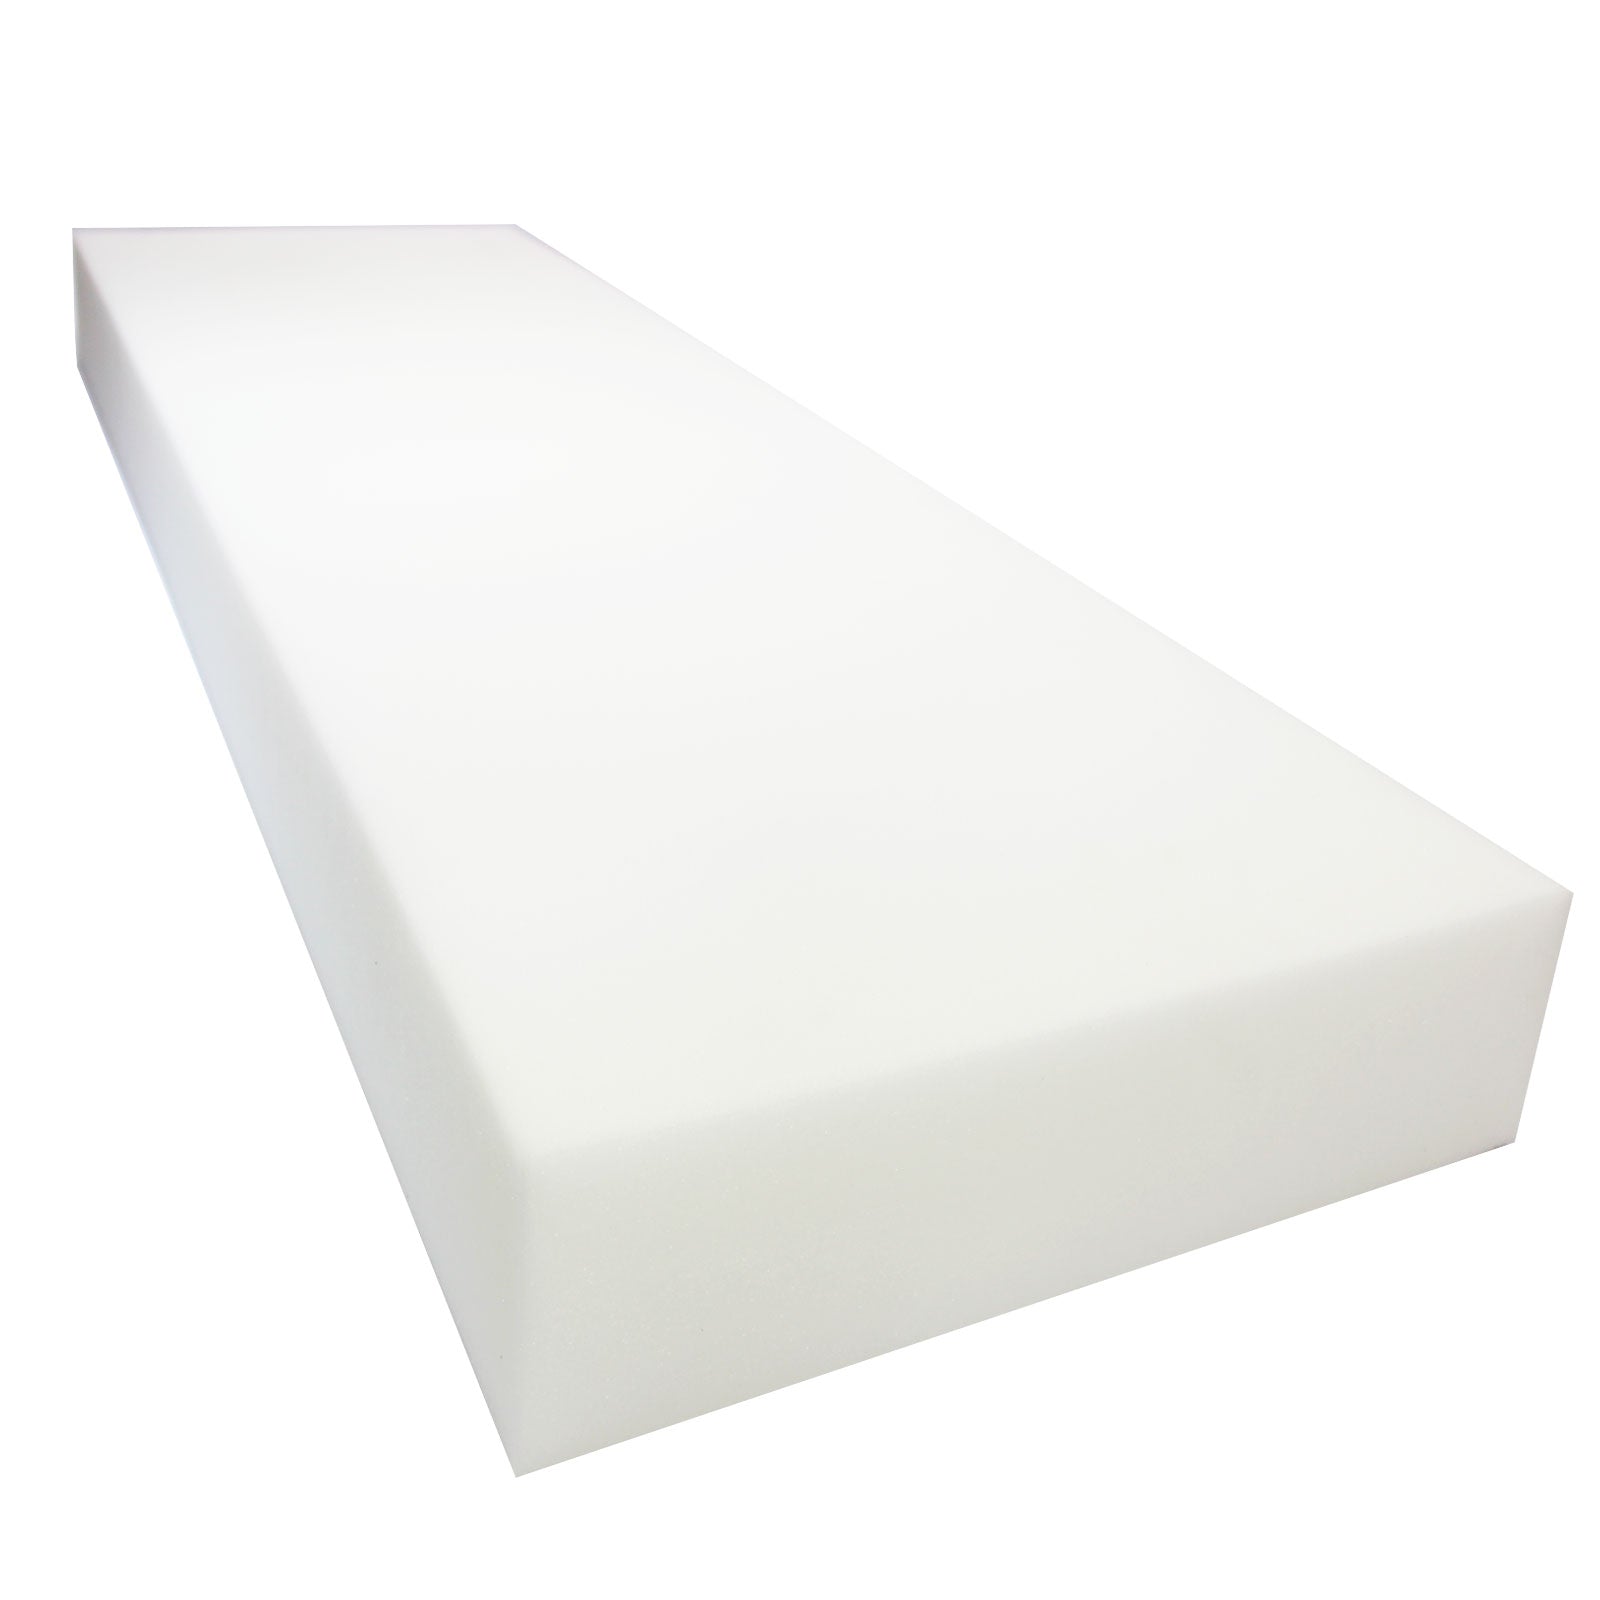  Upholstery Foam 1 inch X 16 X 16 High Density Foam